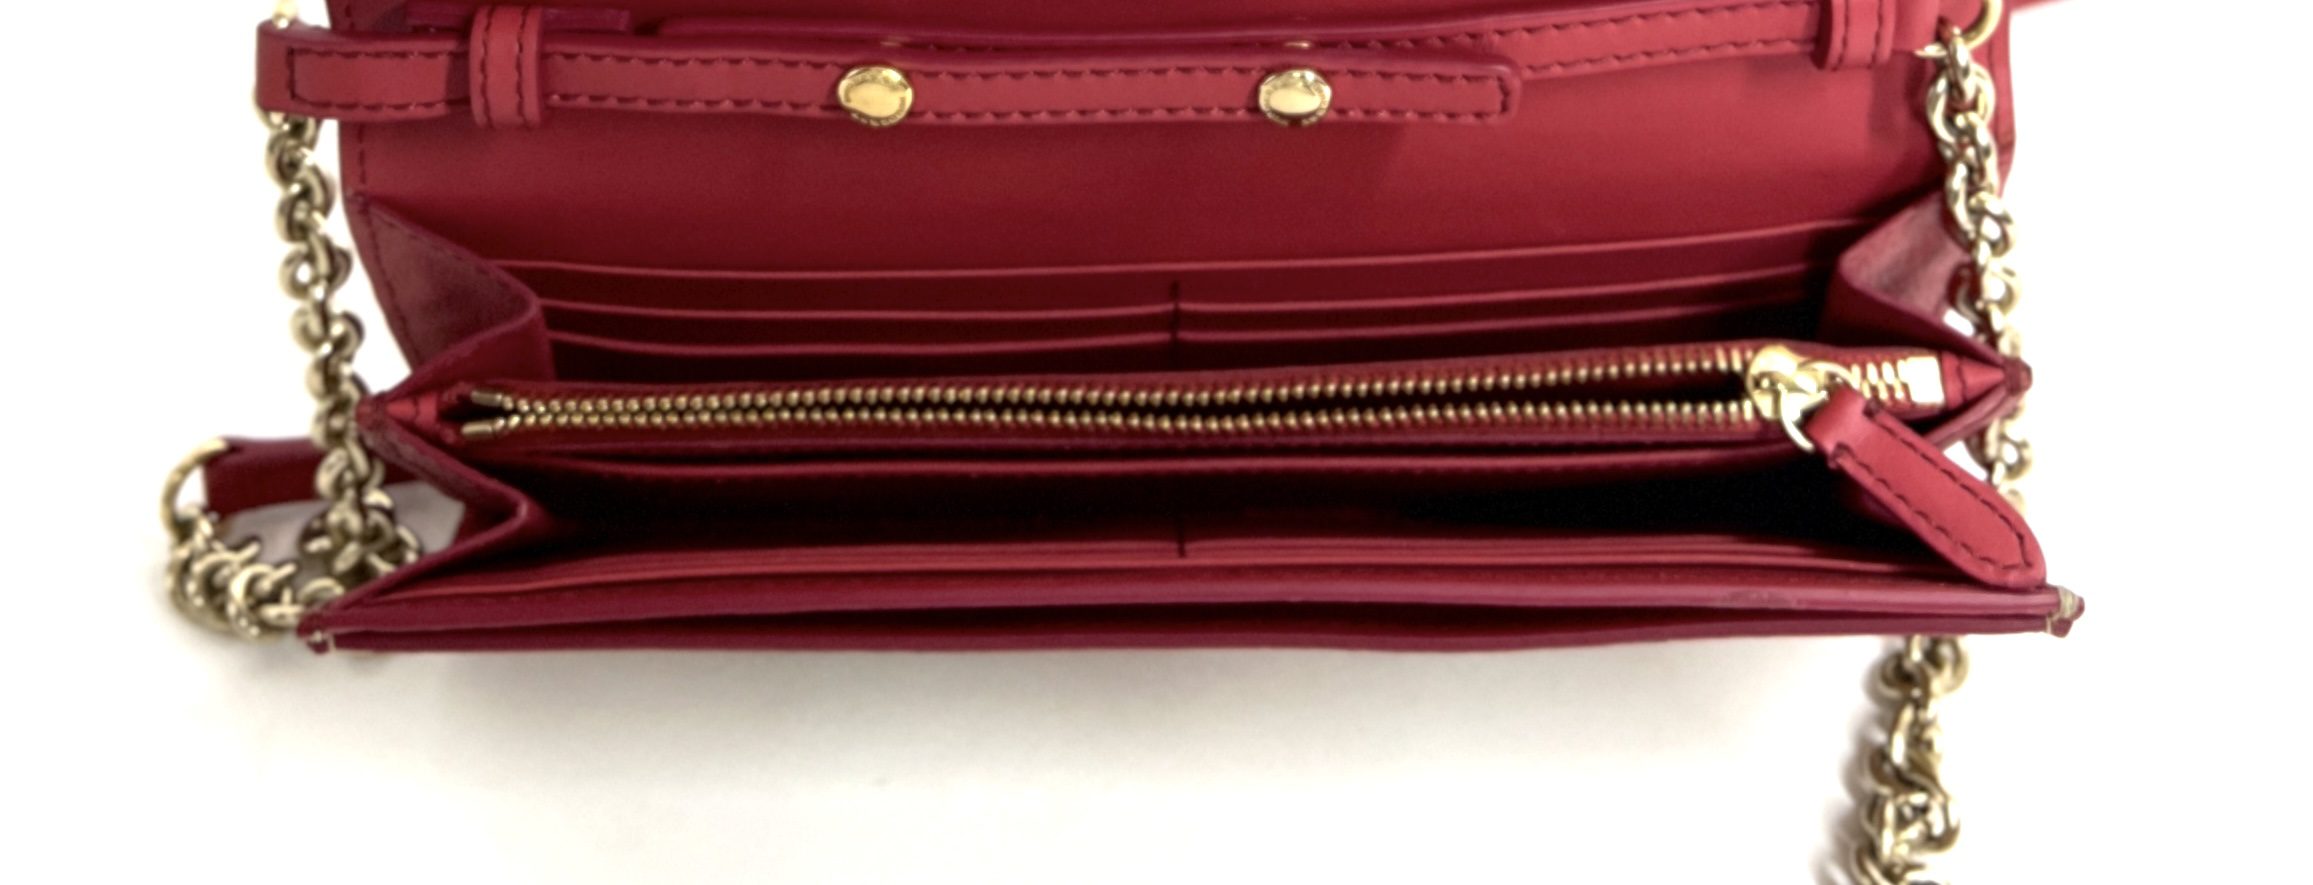 Prada - Saffiano Leather Wallet on Chain Nero